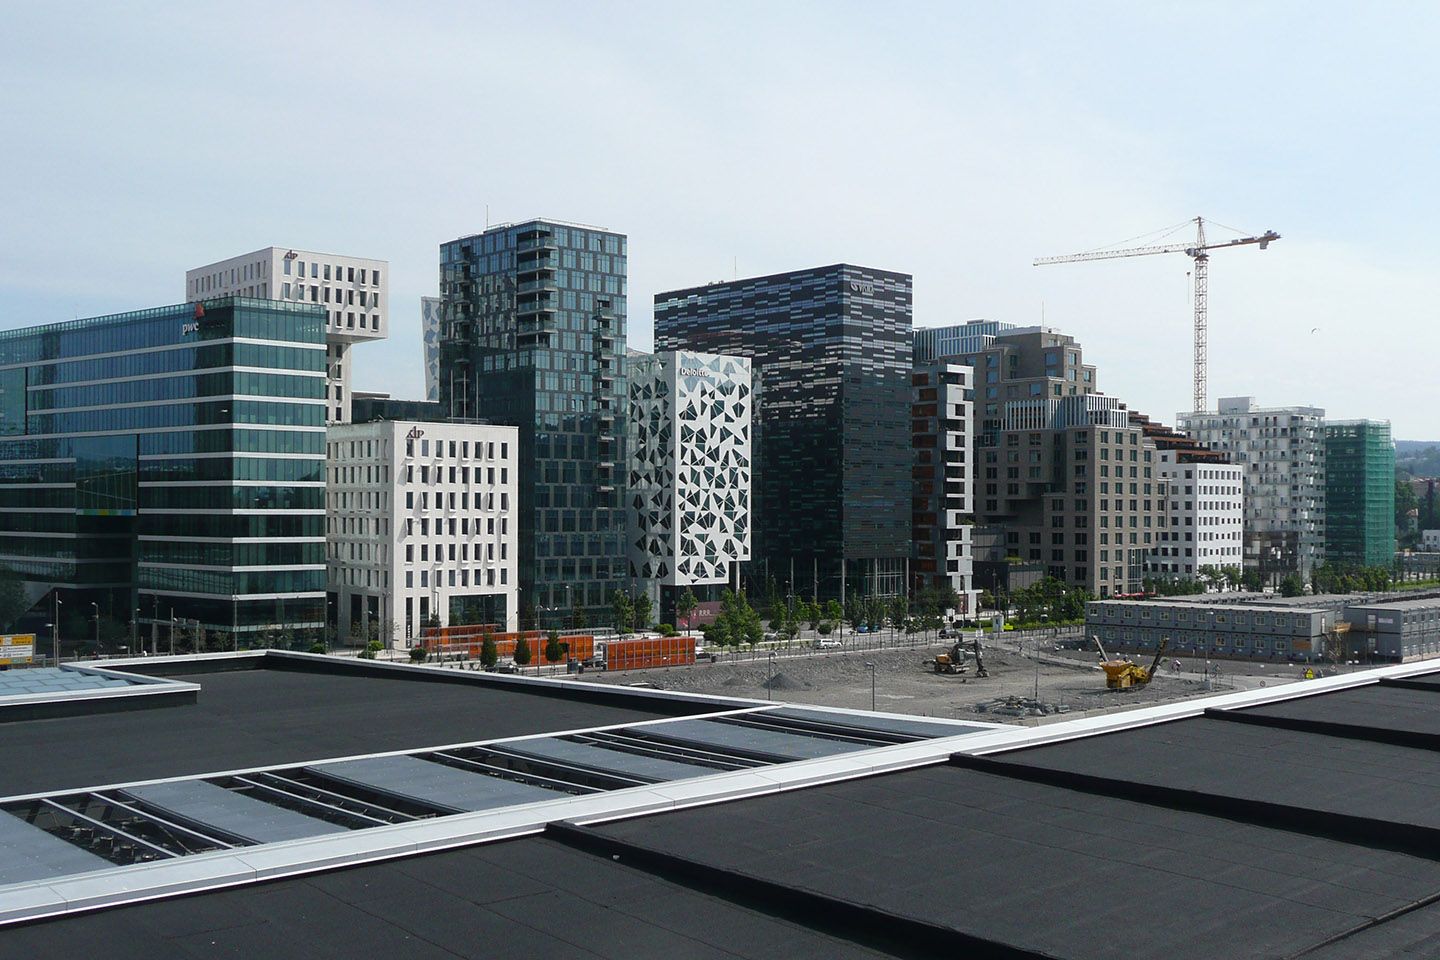 Oslo City Centre